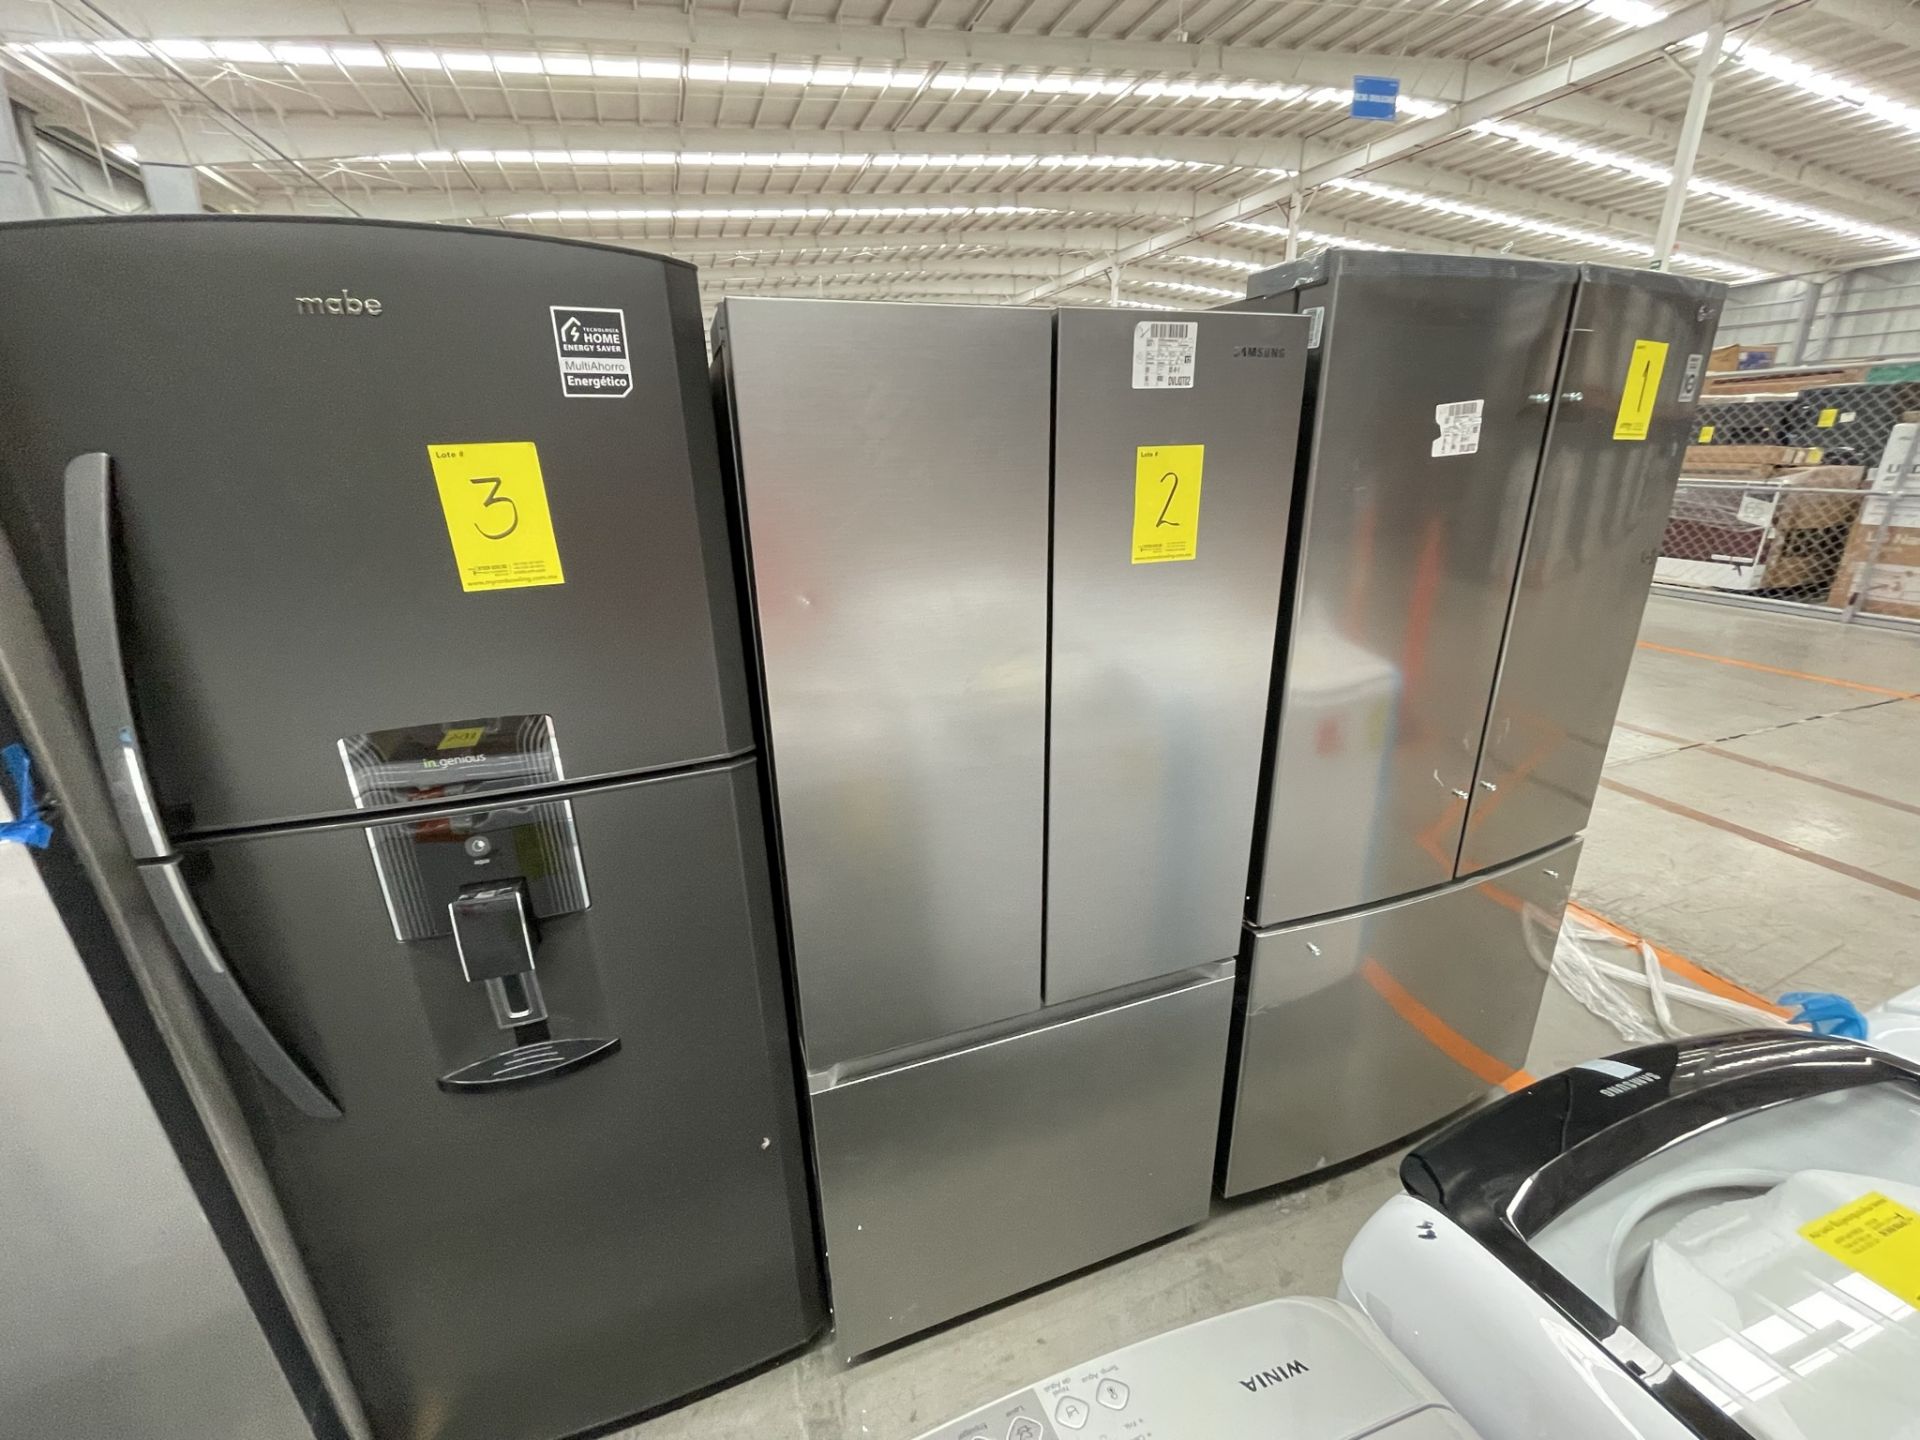 (EQUIPO NUEVO) 1 Refrigerador Marca SAMSUNG, Modelo RF22A401059, Serie 00259W, Color GRIS, LB-62158 - Image 3 of 9